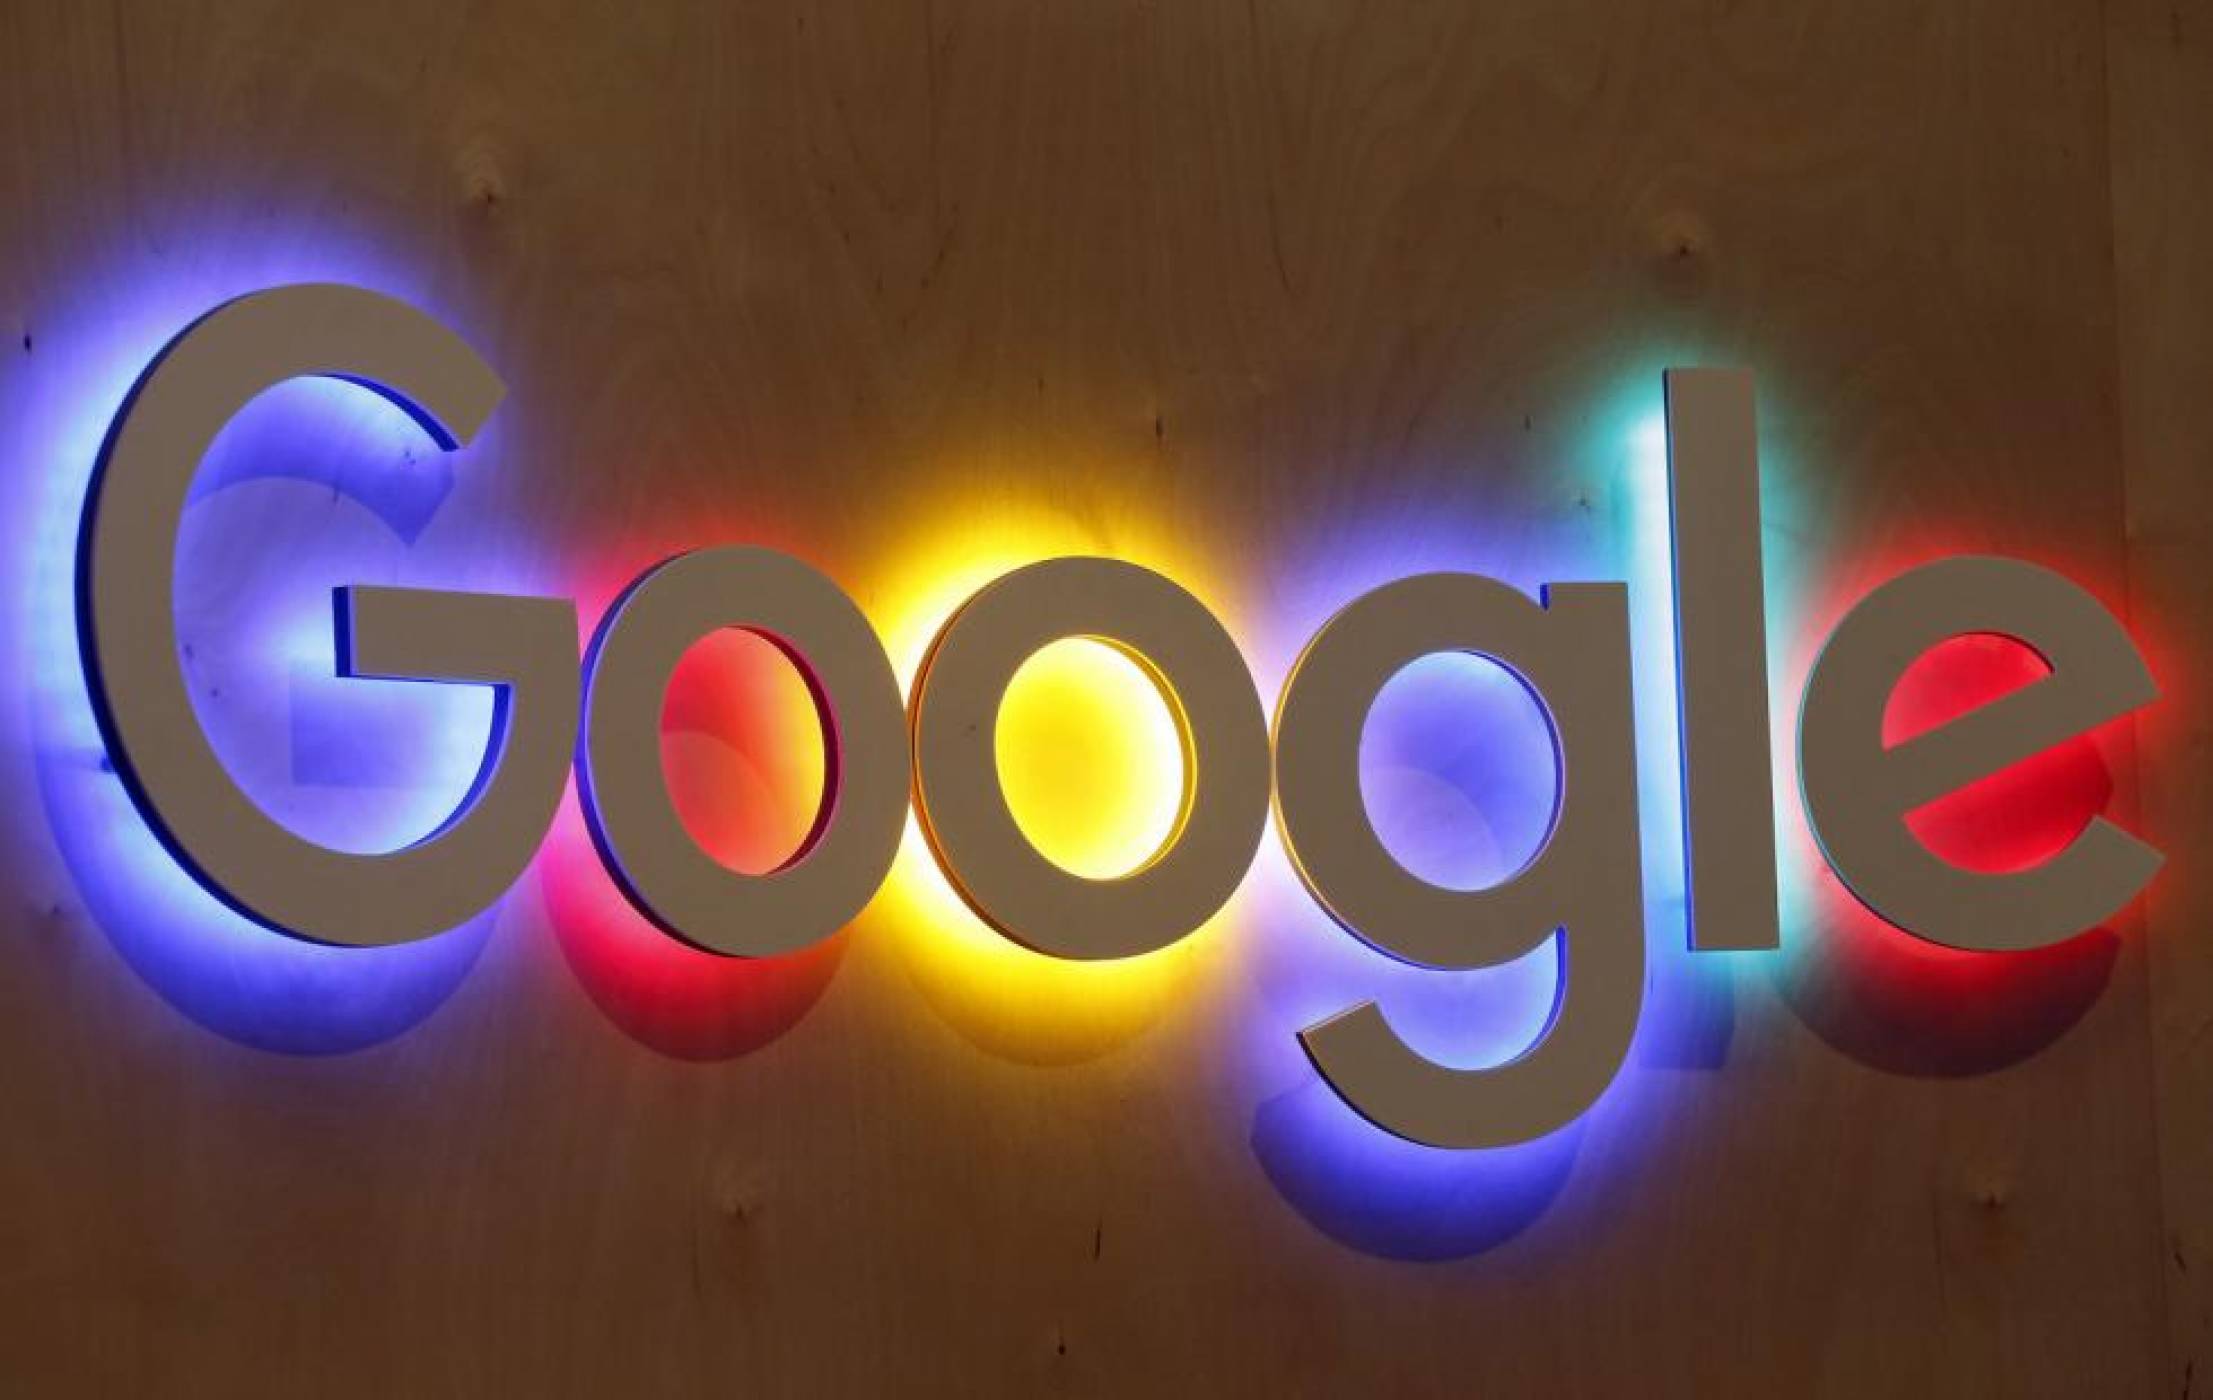 Сървъри в Китай, Нигерия и Русия са причина за пренасочения трафик на Google